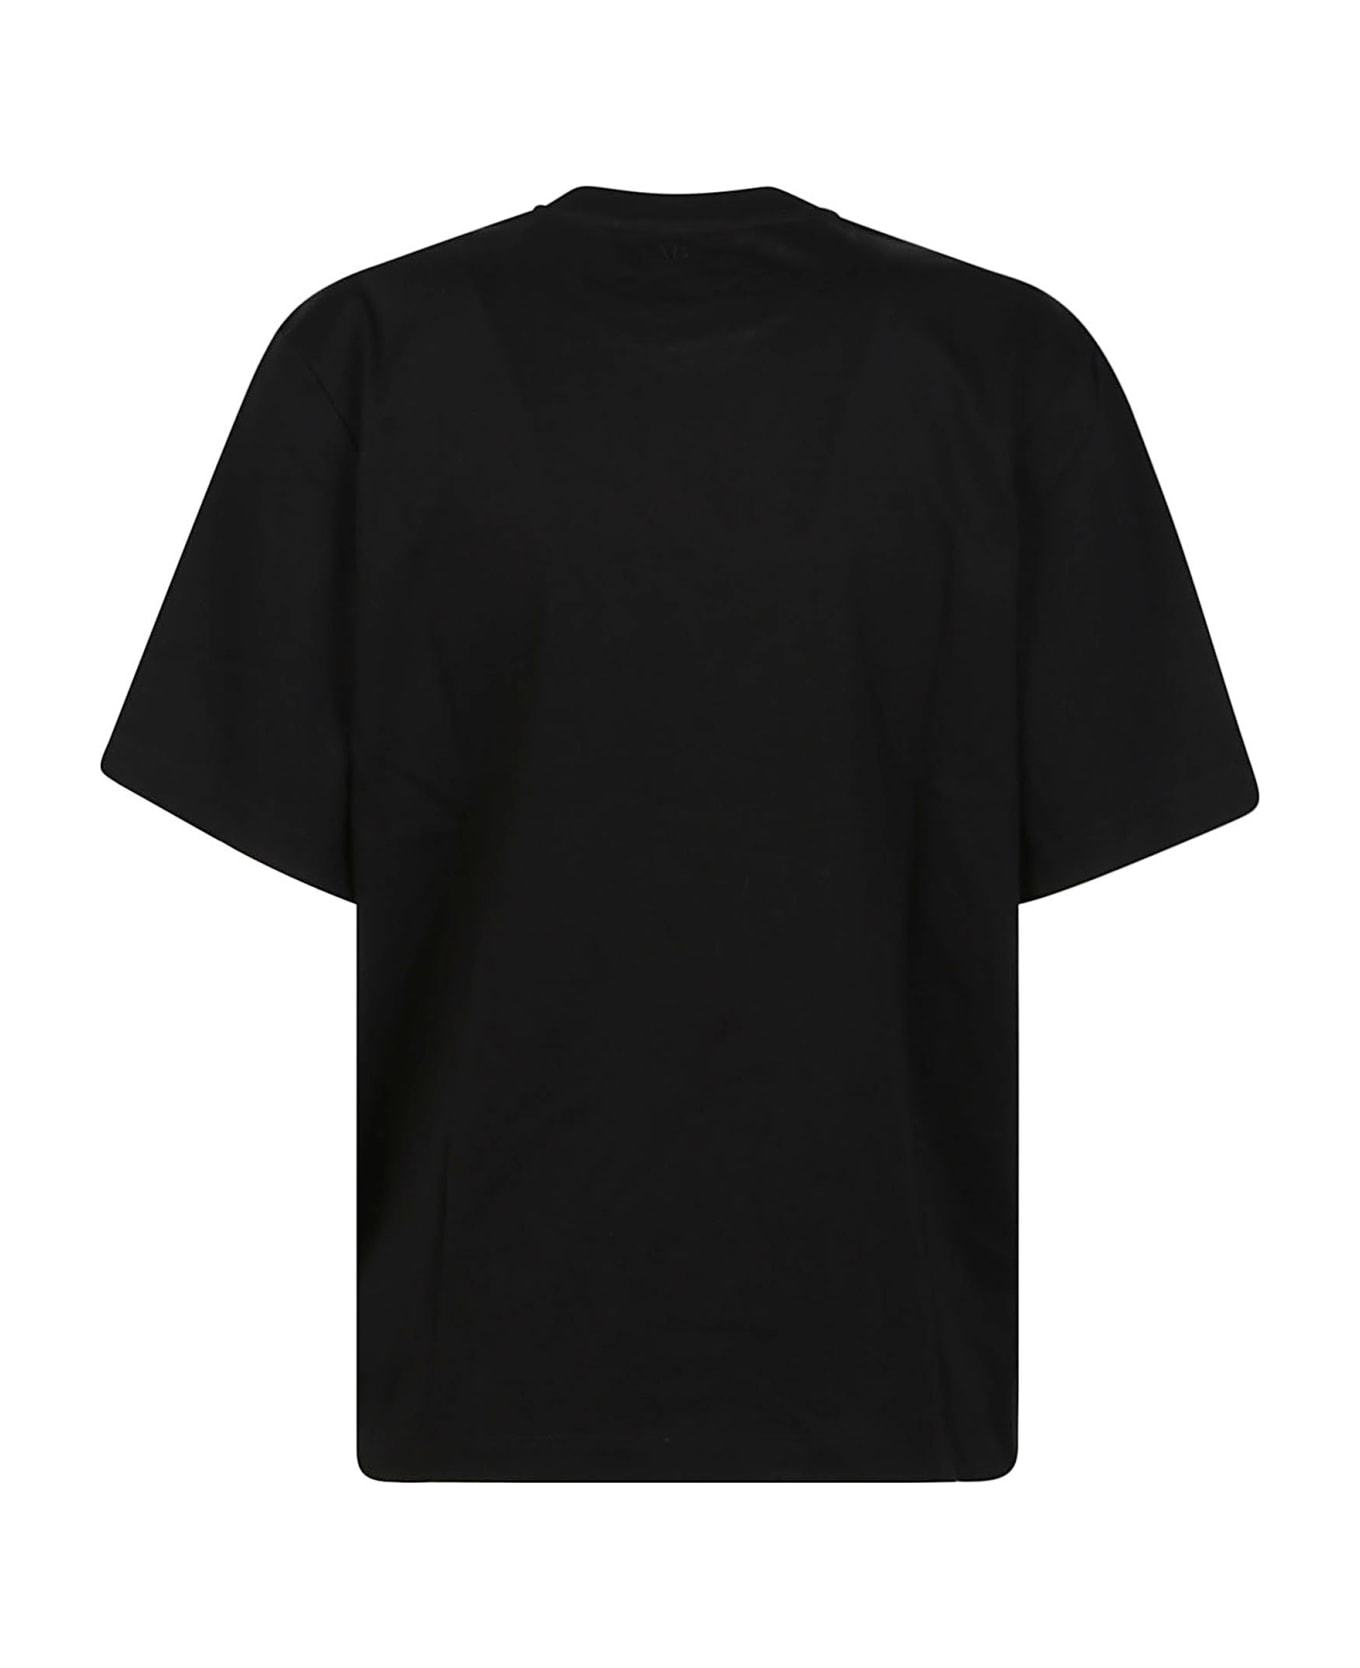 Victoria Beckham Twist Front T-shirt - Black Tシャツ